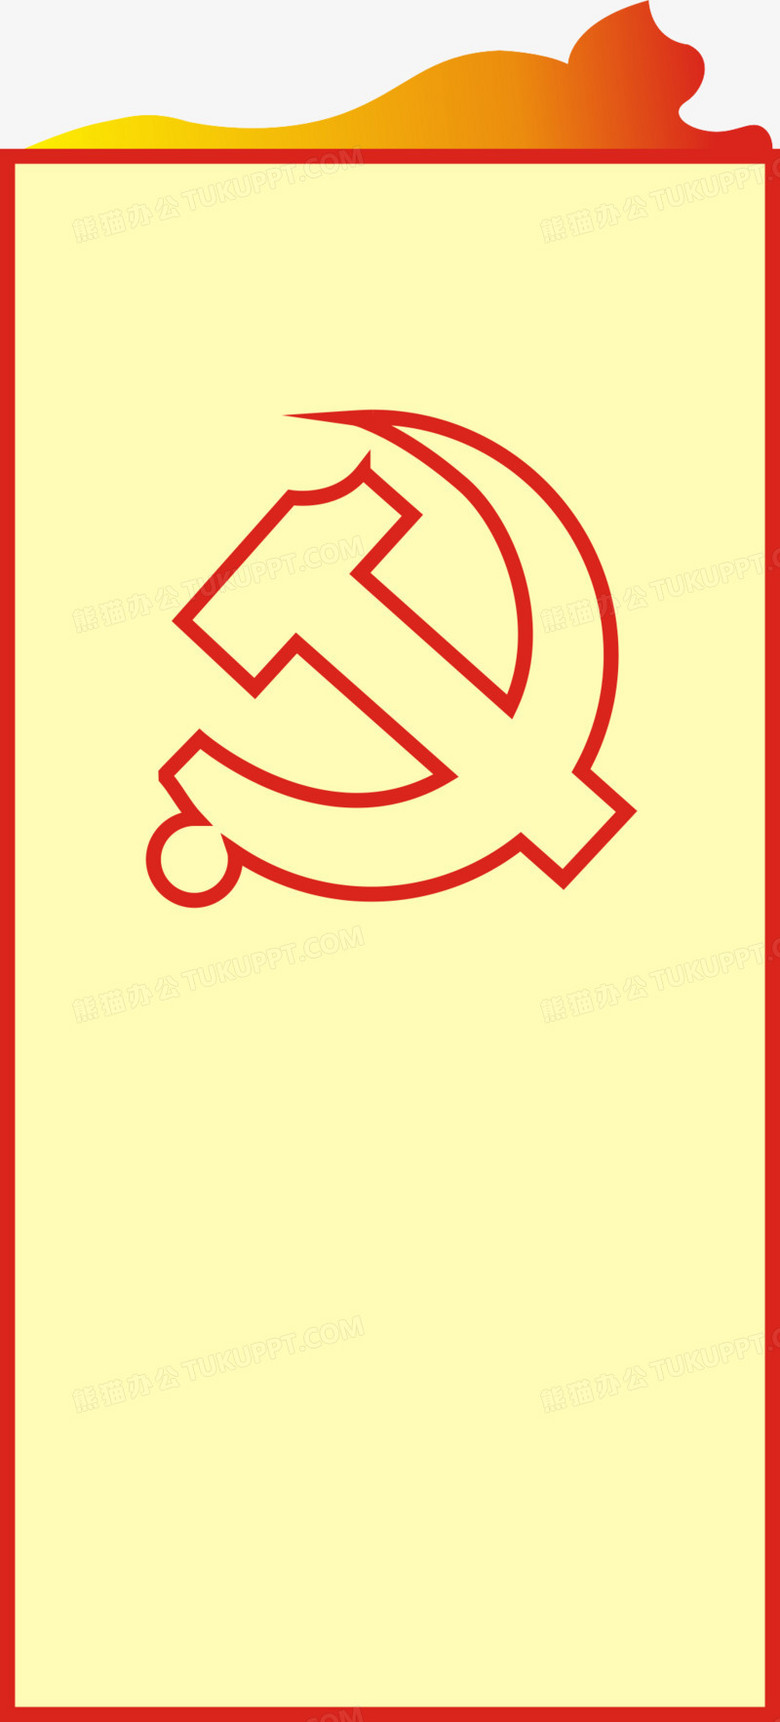 党徽背景无字图片